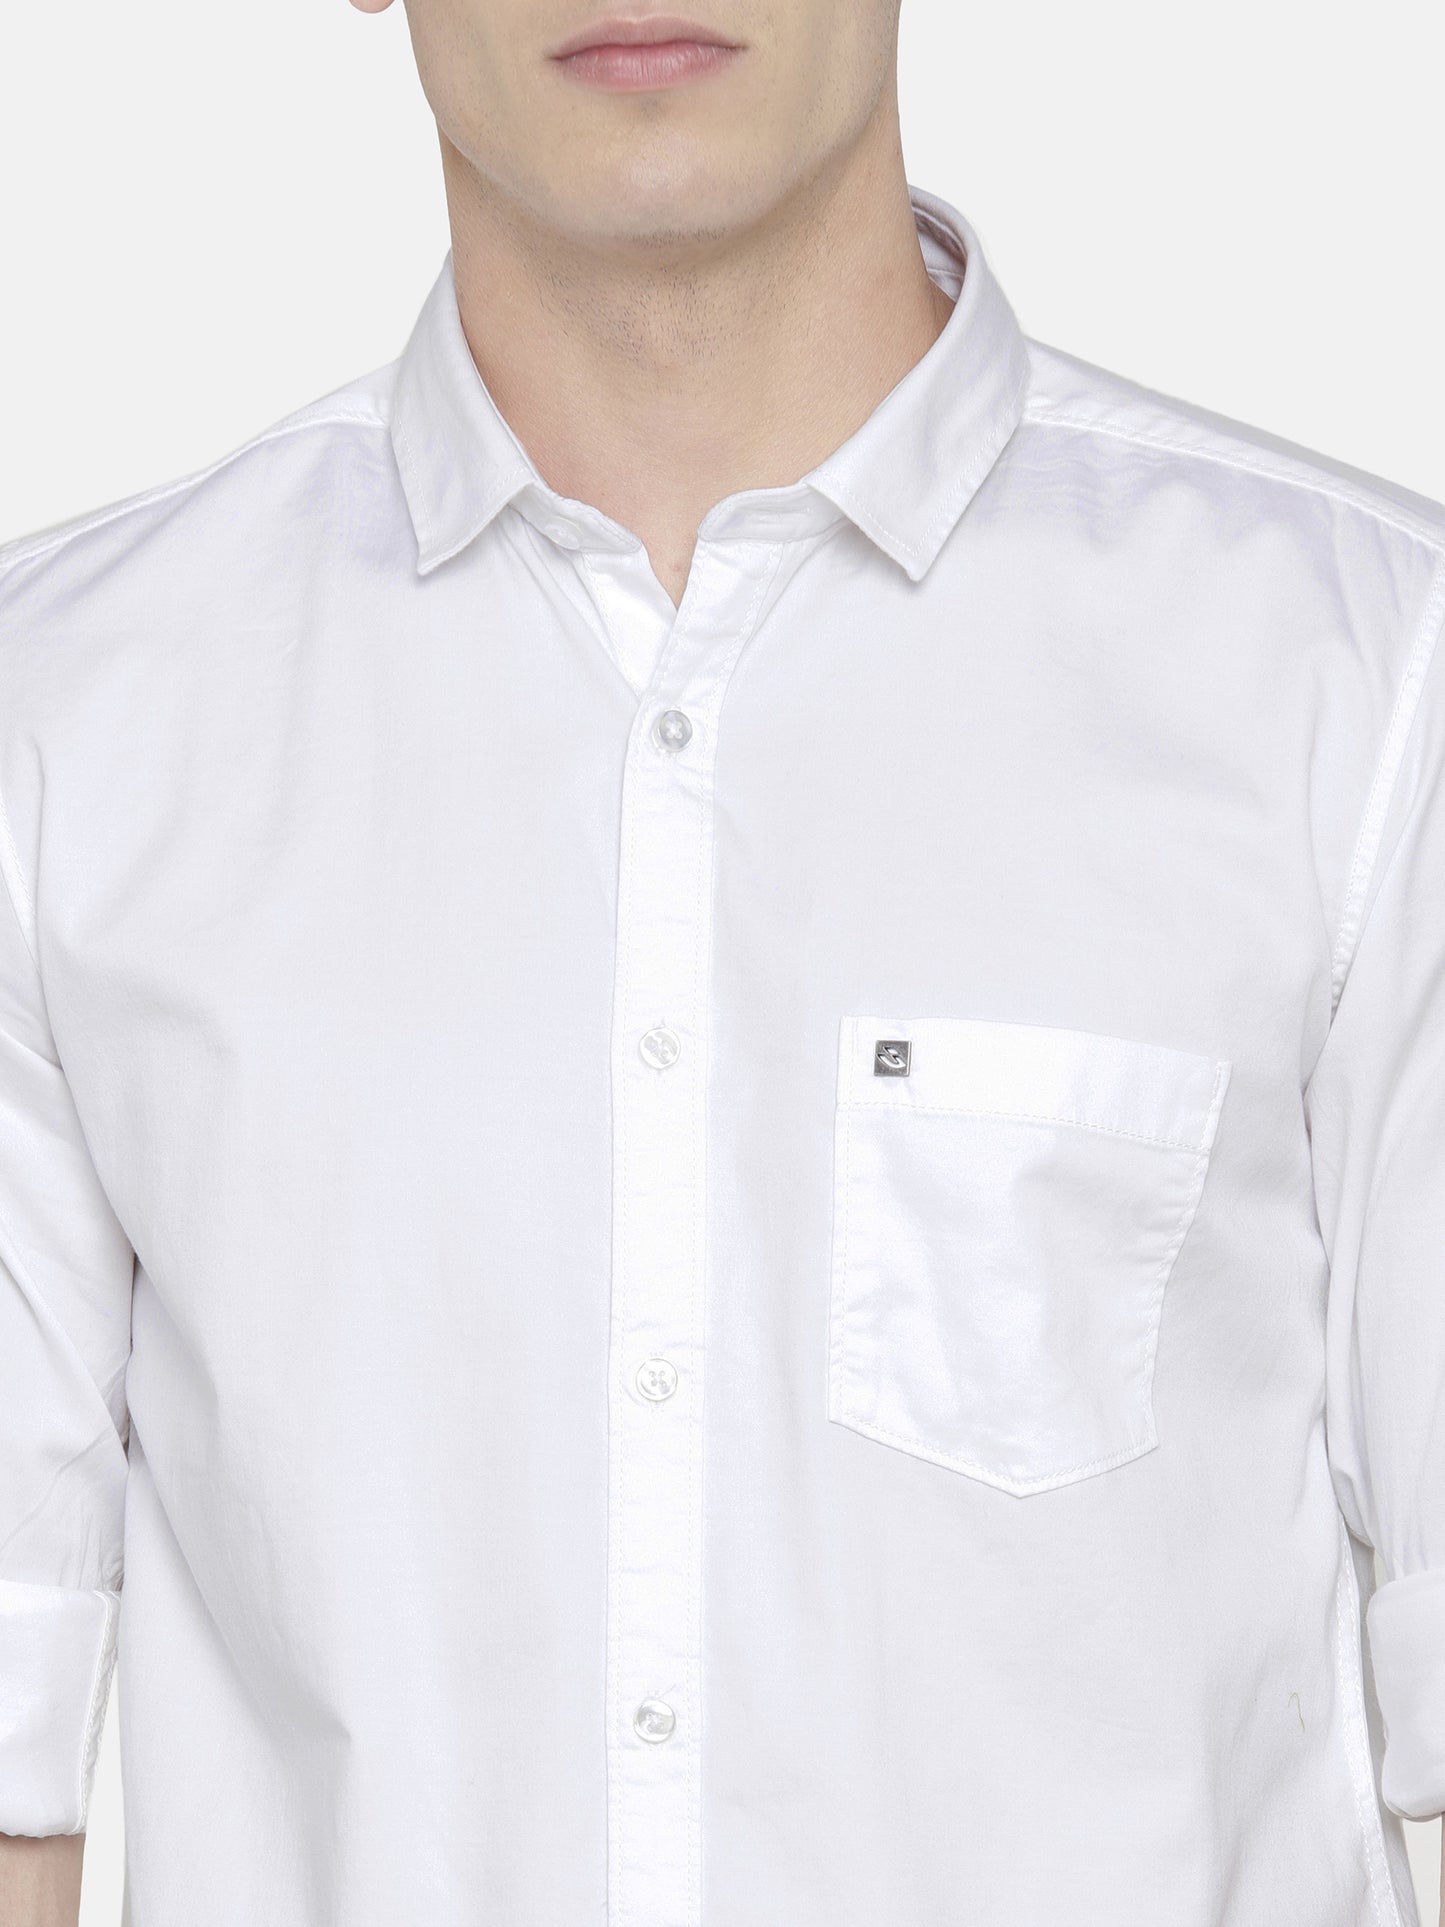 Bright White Oxford Shirt